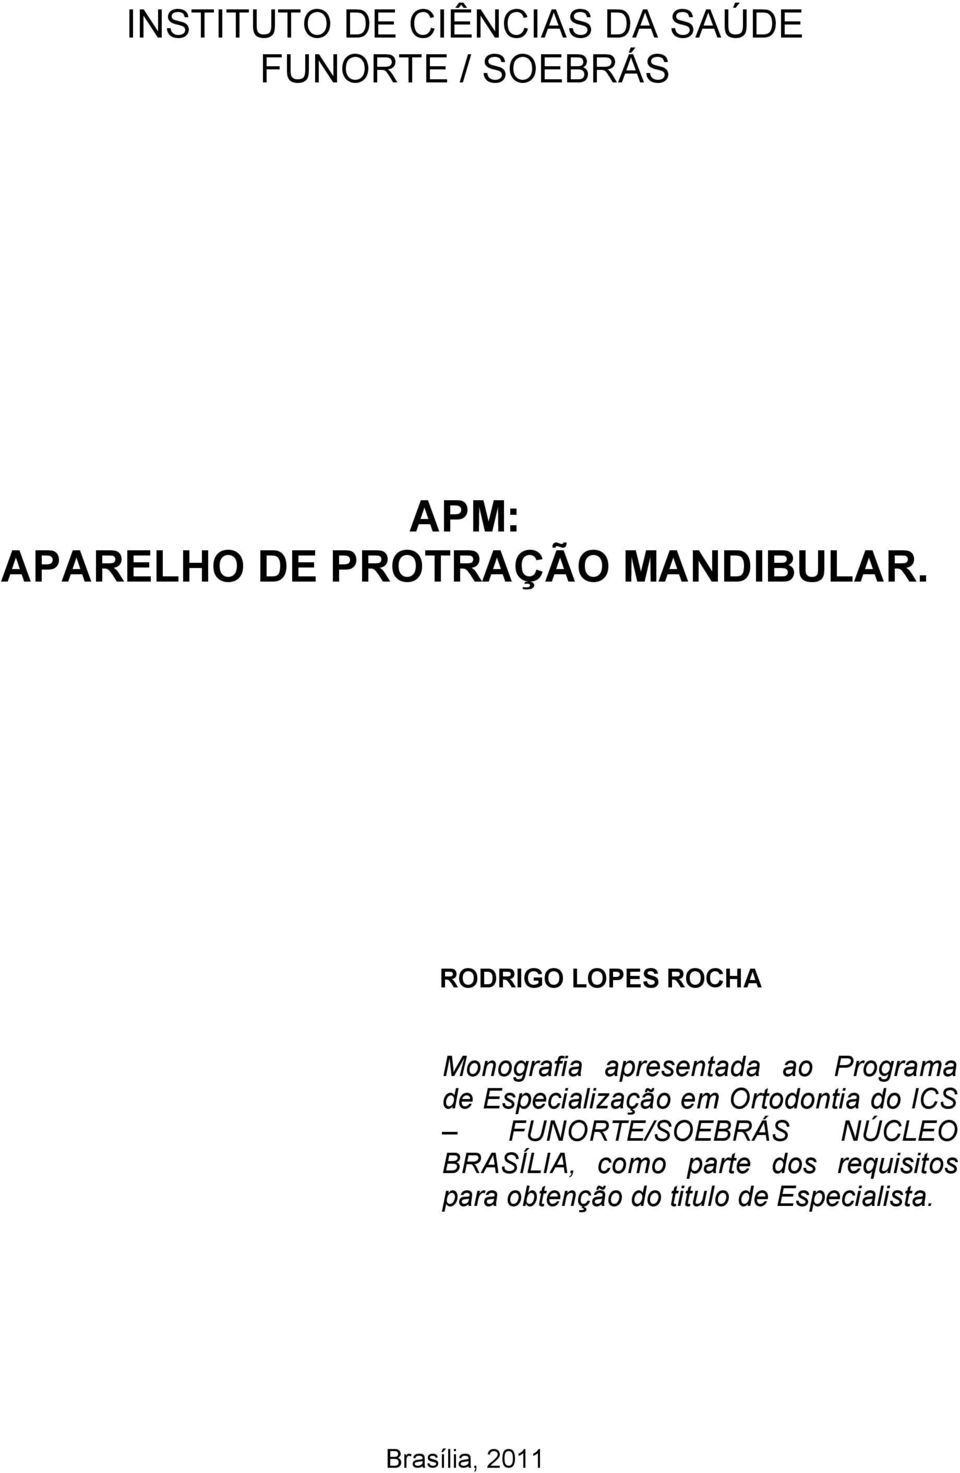 RODRIGO LOPES ROCHA Monografia apresentada ao Programa de Especialização